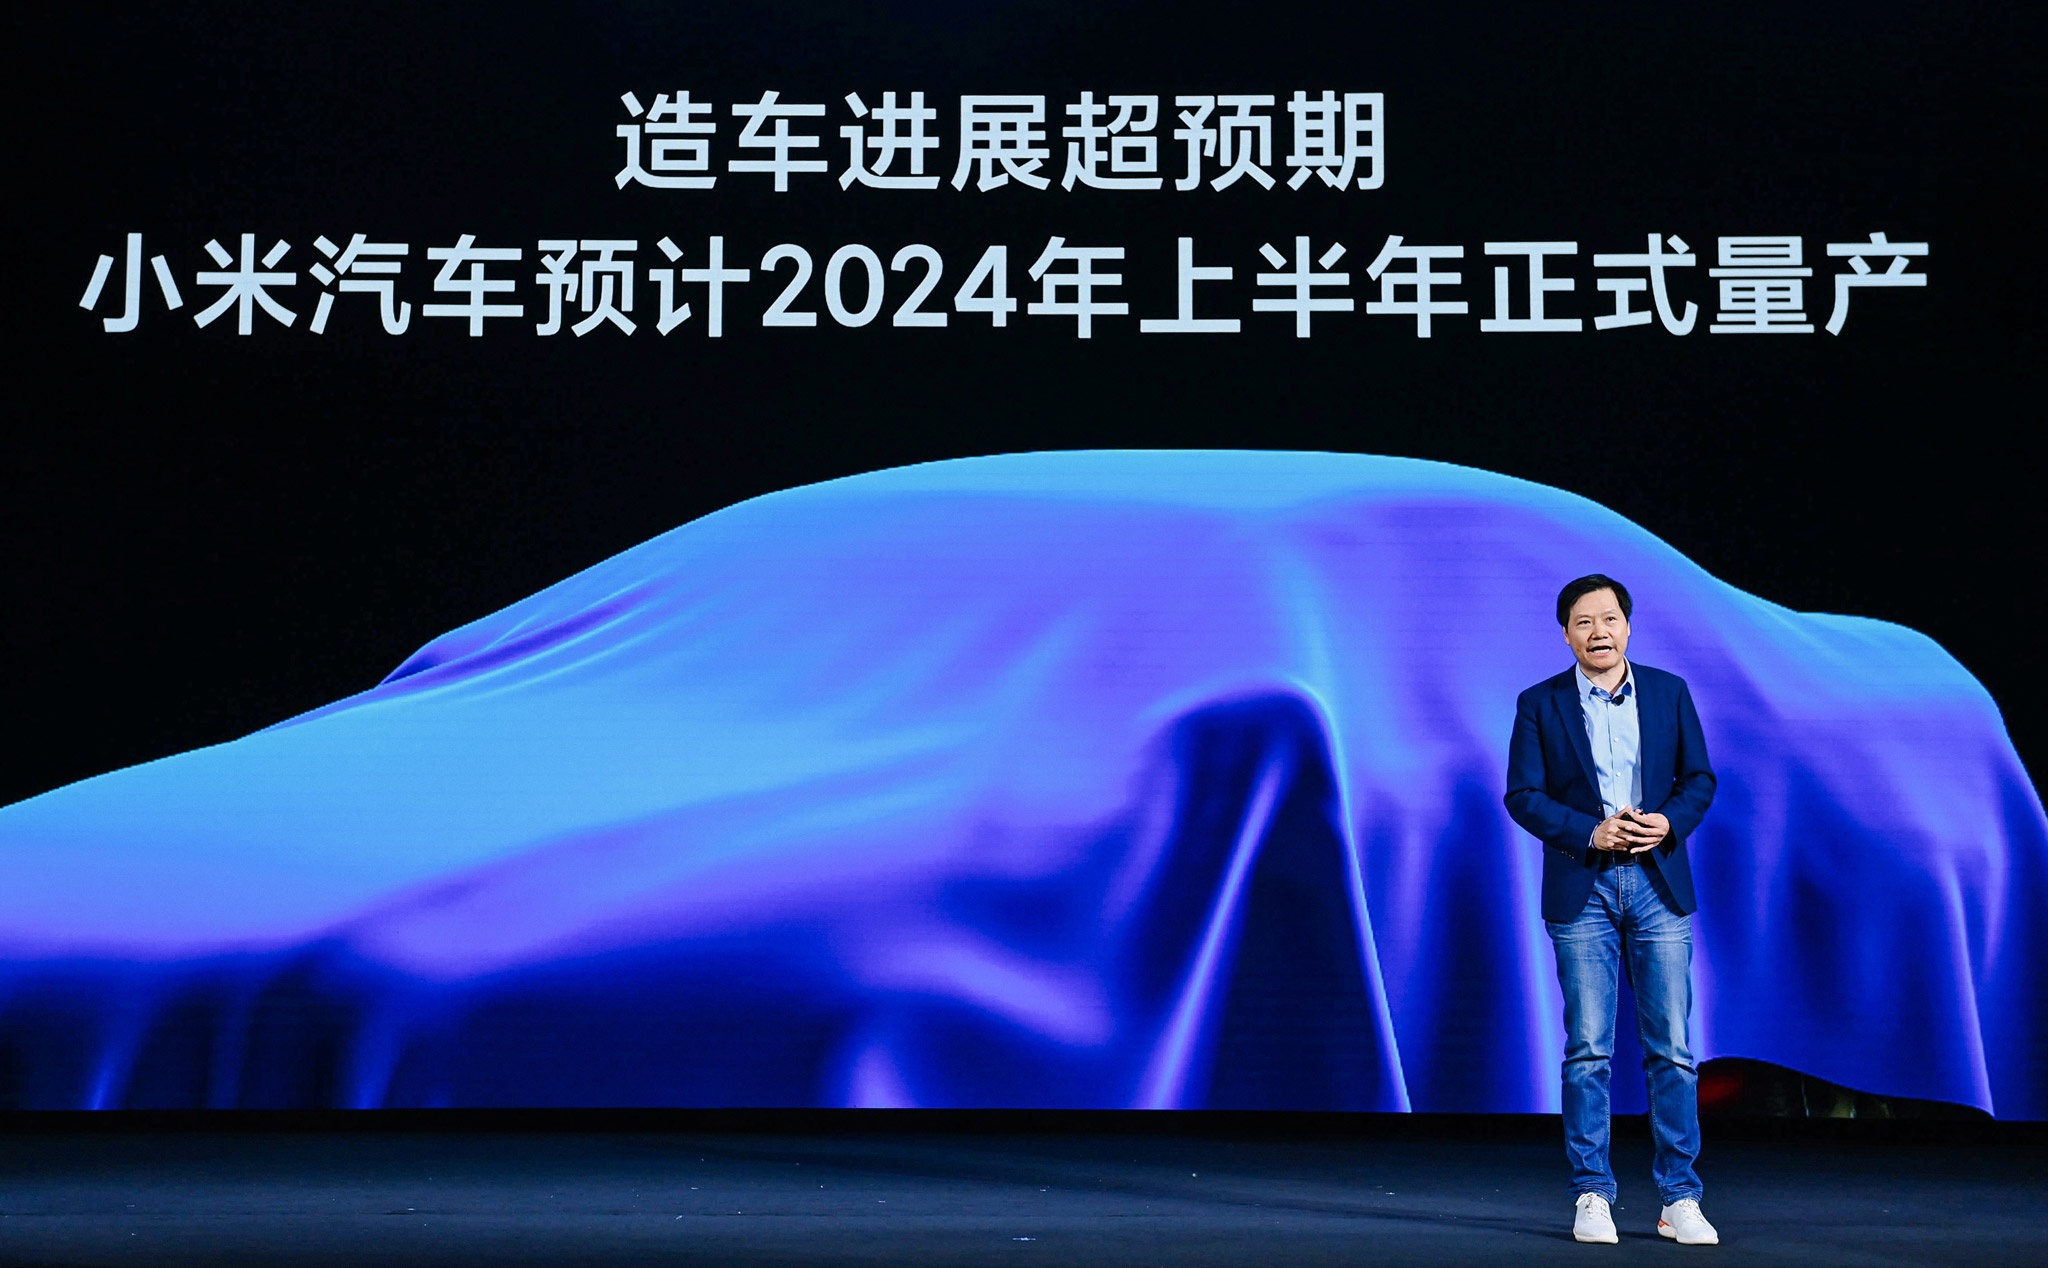 Dự án phát triển xe của Xiaomi có thể sẽ chậm lại do các yêu cầu xét duyệt từ nhà chức trách